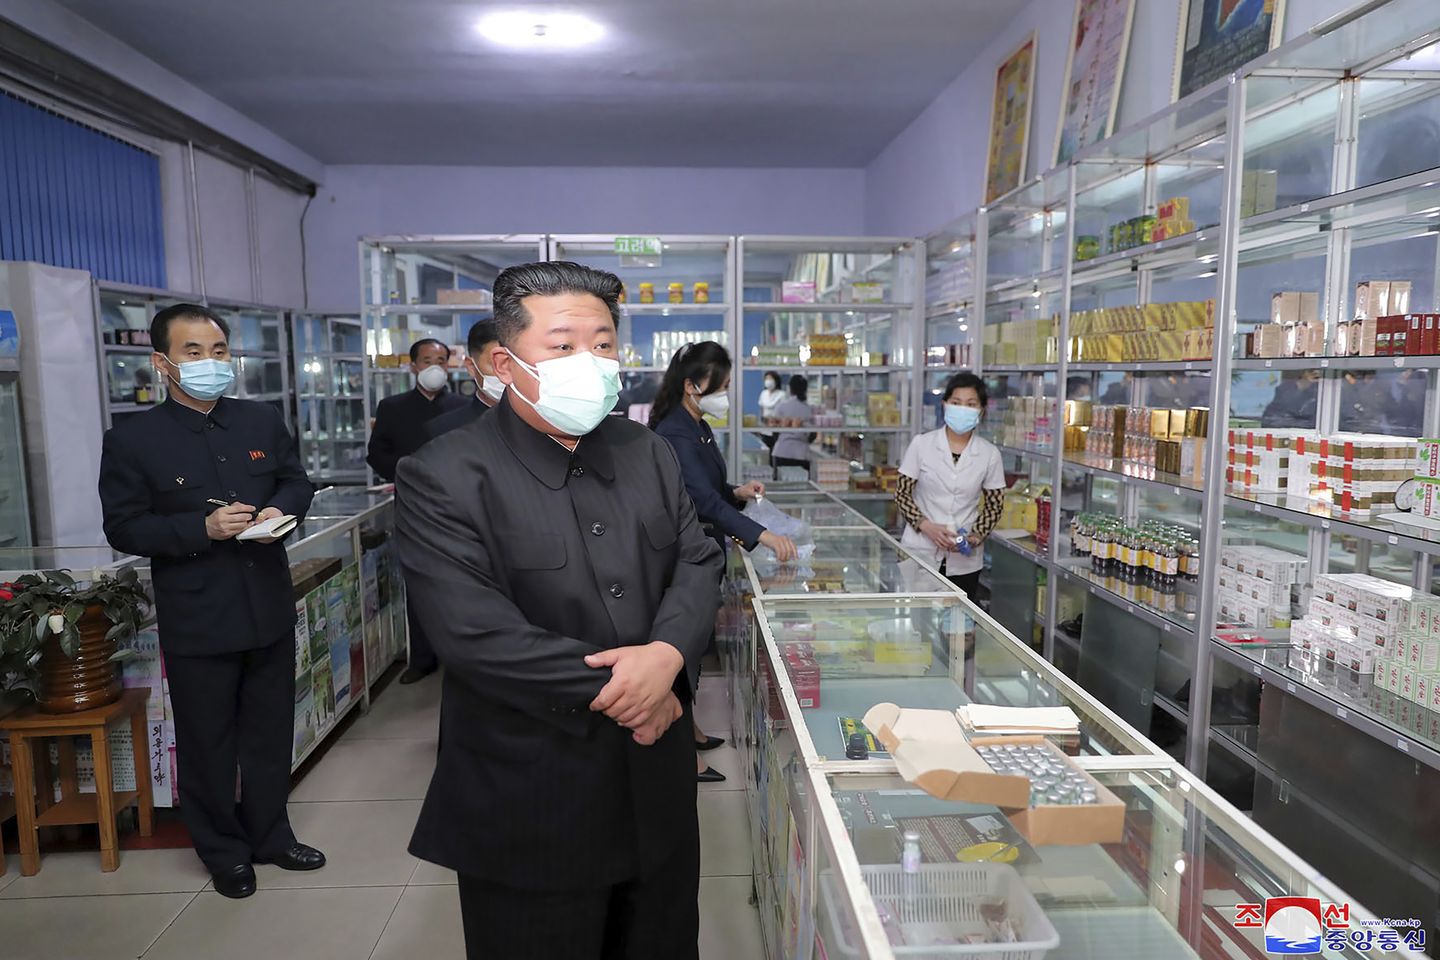 Kuzey Kore, Güney Kore'nin koronavirüs yardım teklifini görmezden geldi